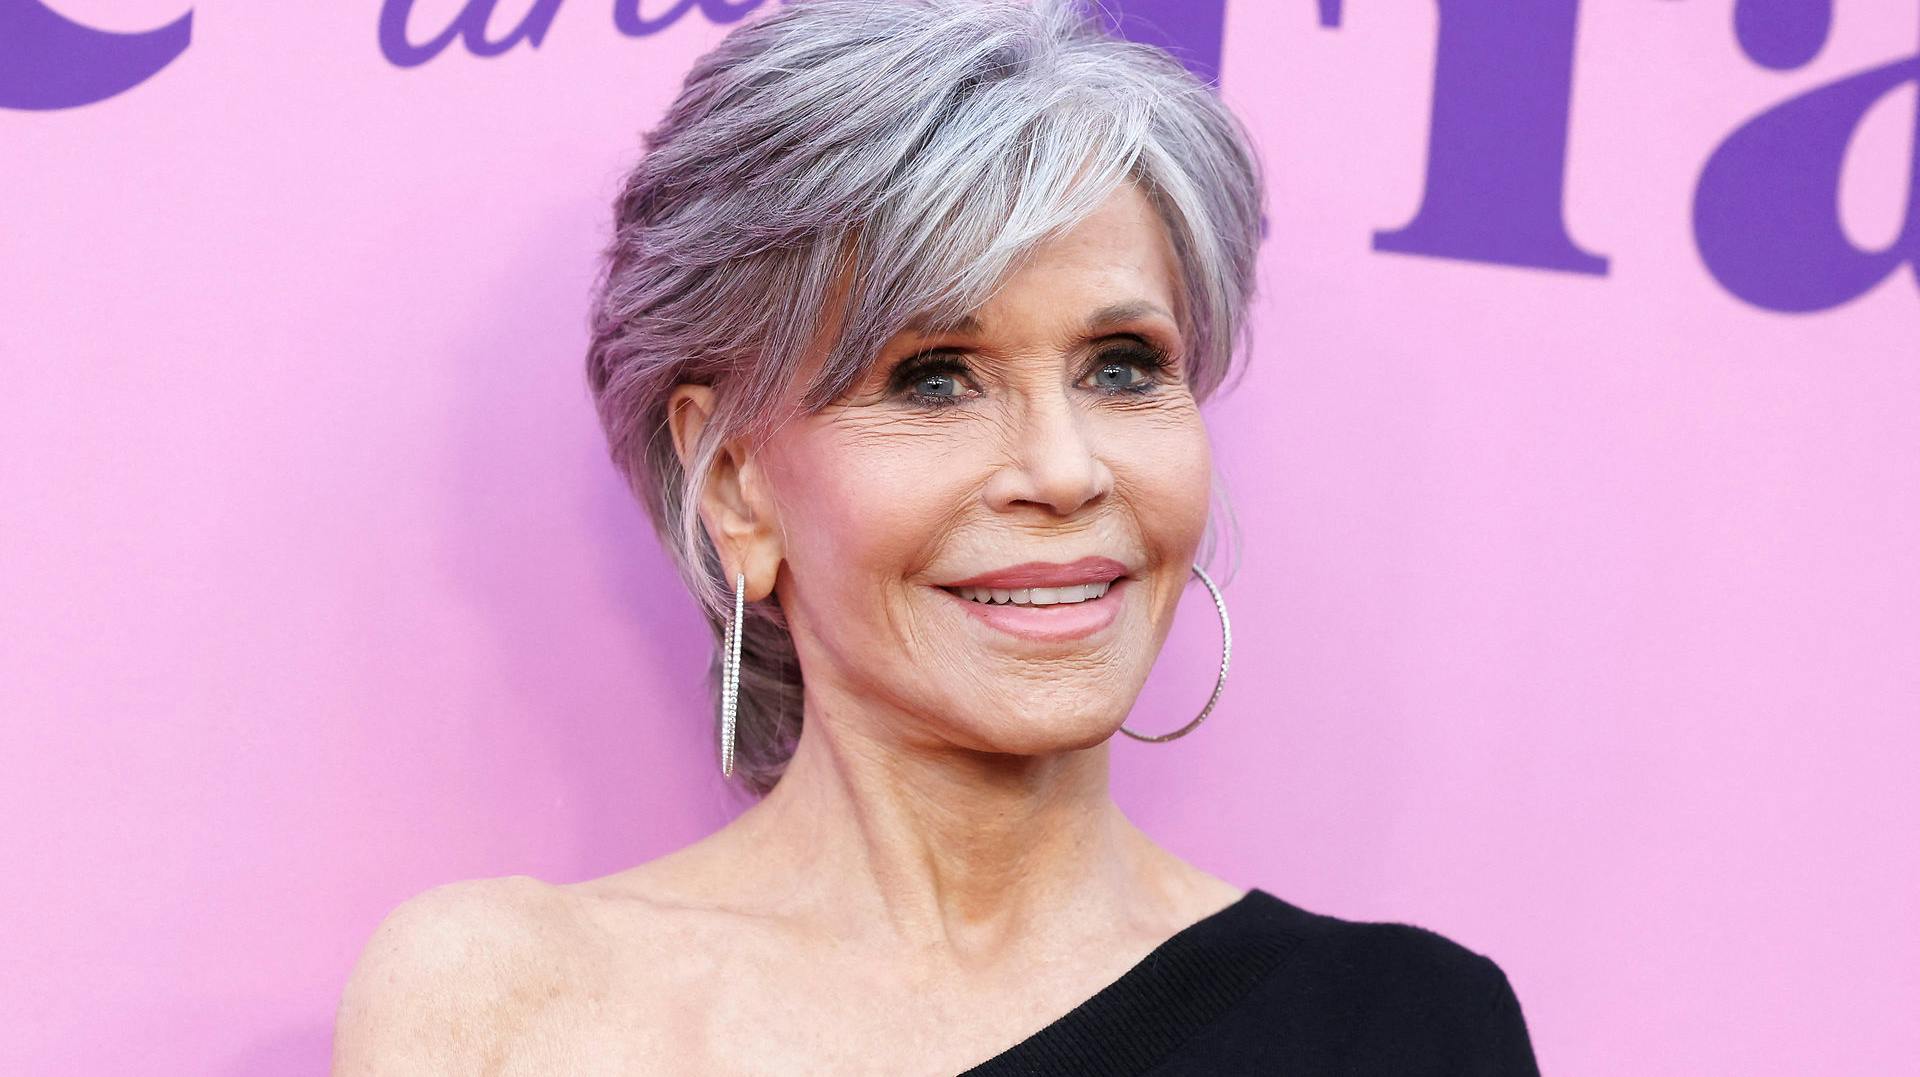 Skuespillerinden Jane Fonda har fået konstateret kræft, fortæller hun på Instagram.